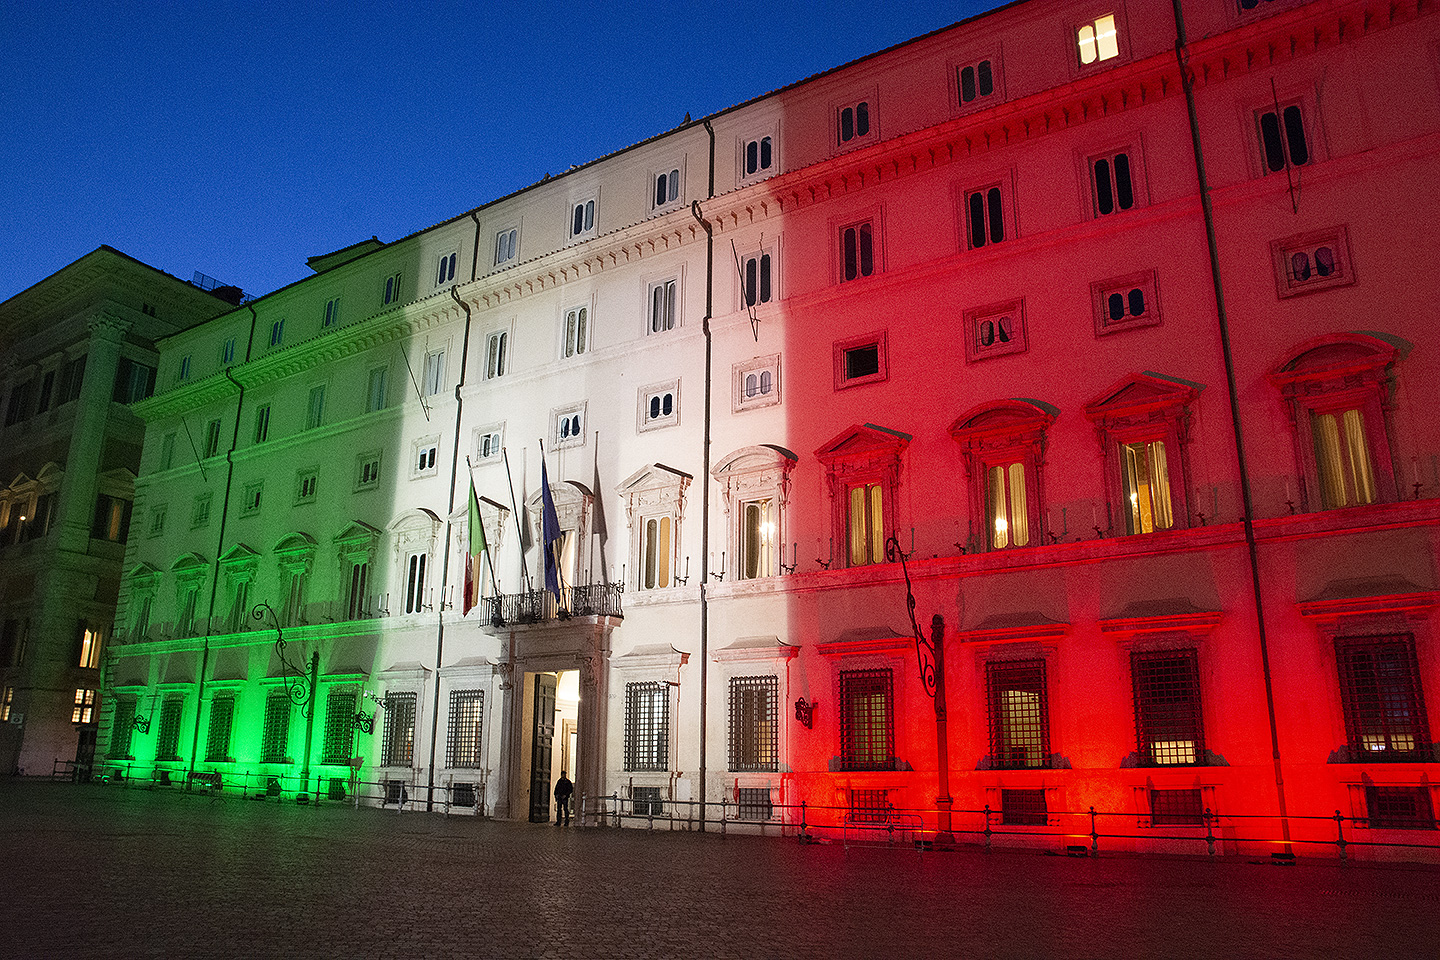 En 2021, pendant certains jours fériés à Rome, les monuments sont éclairés aux couleurs de l'Italie